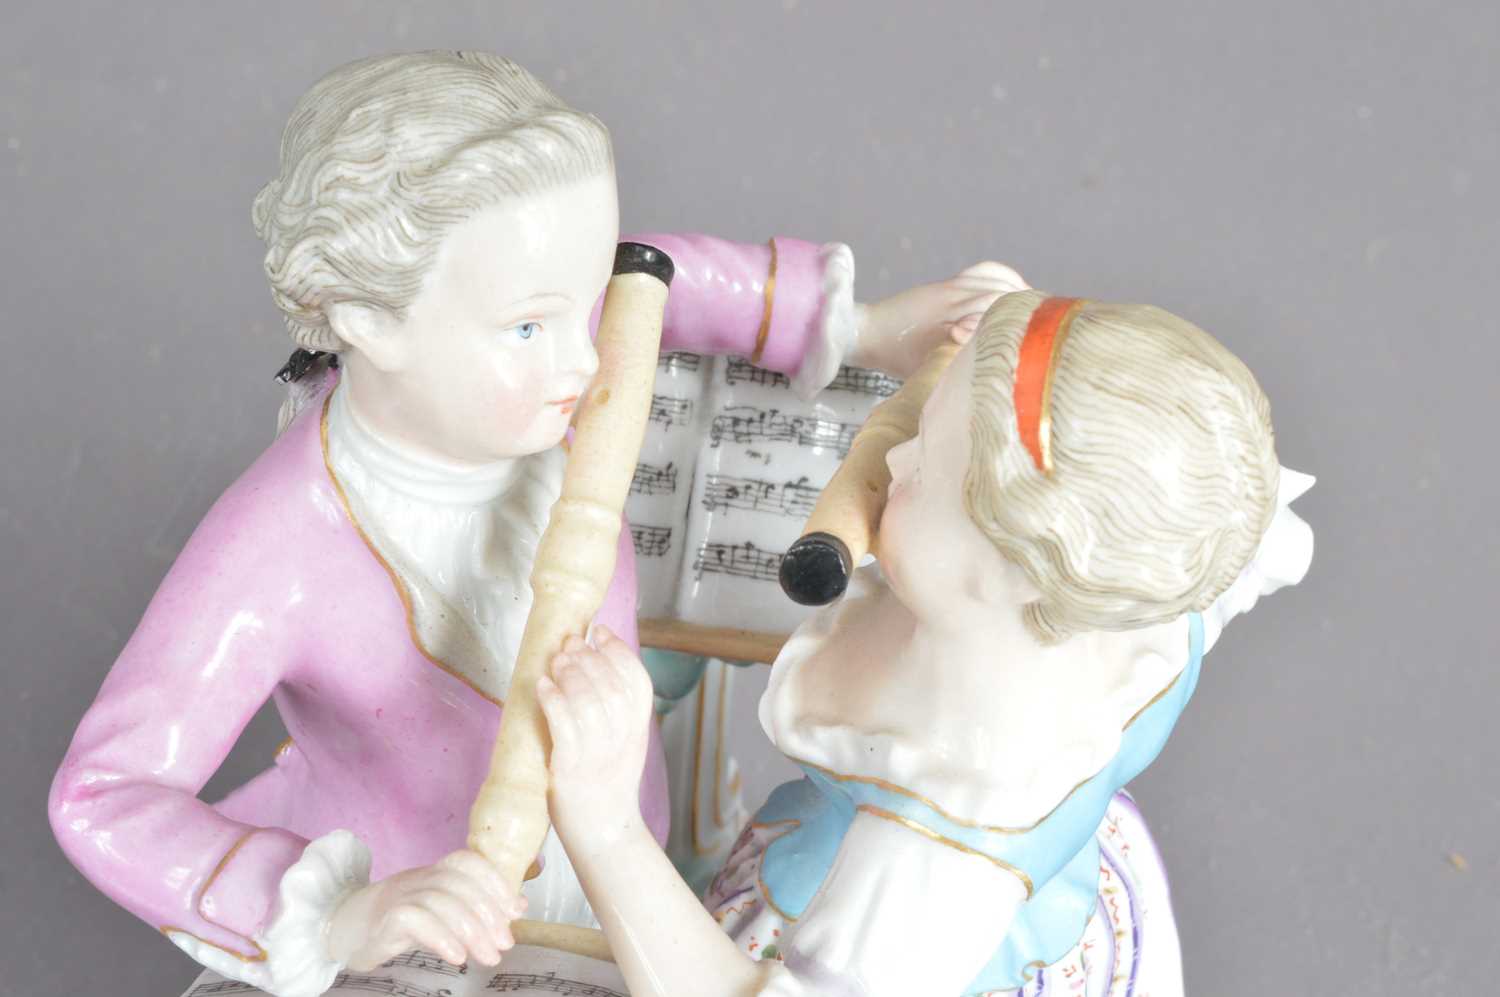 A Meissen porcelain flute duet figure group, - Image 4 of 6